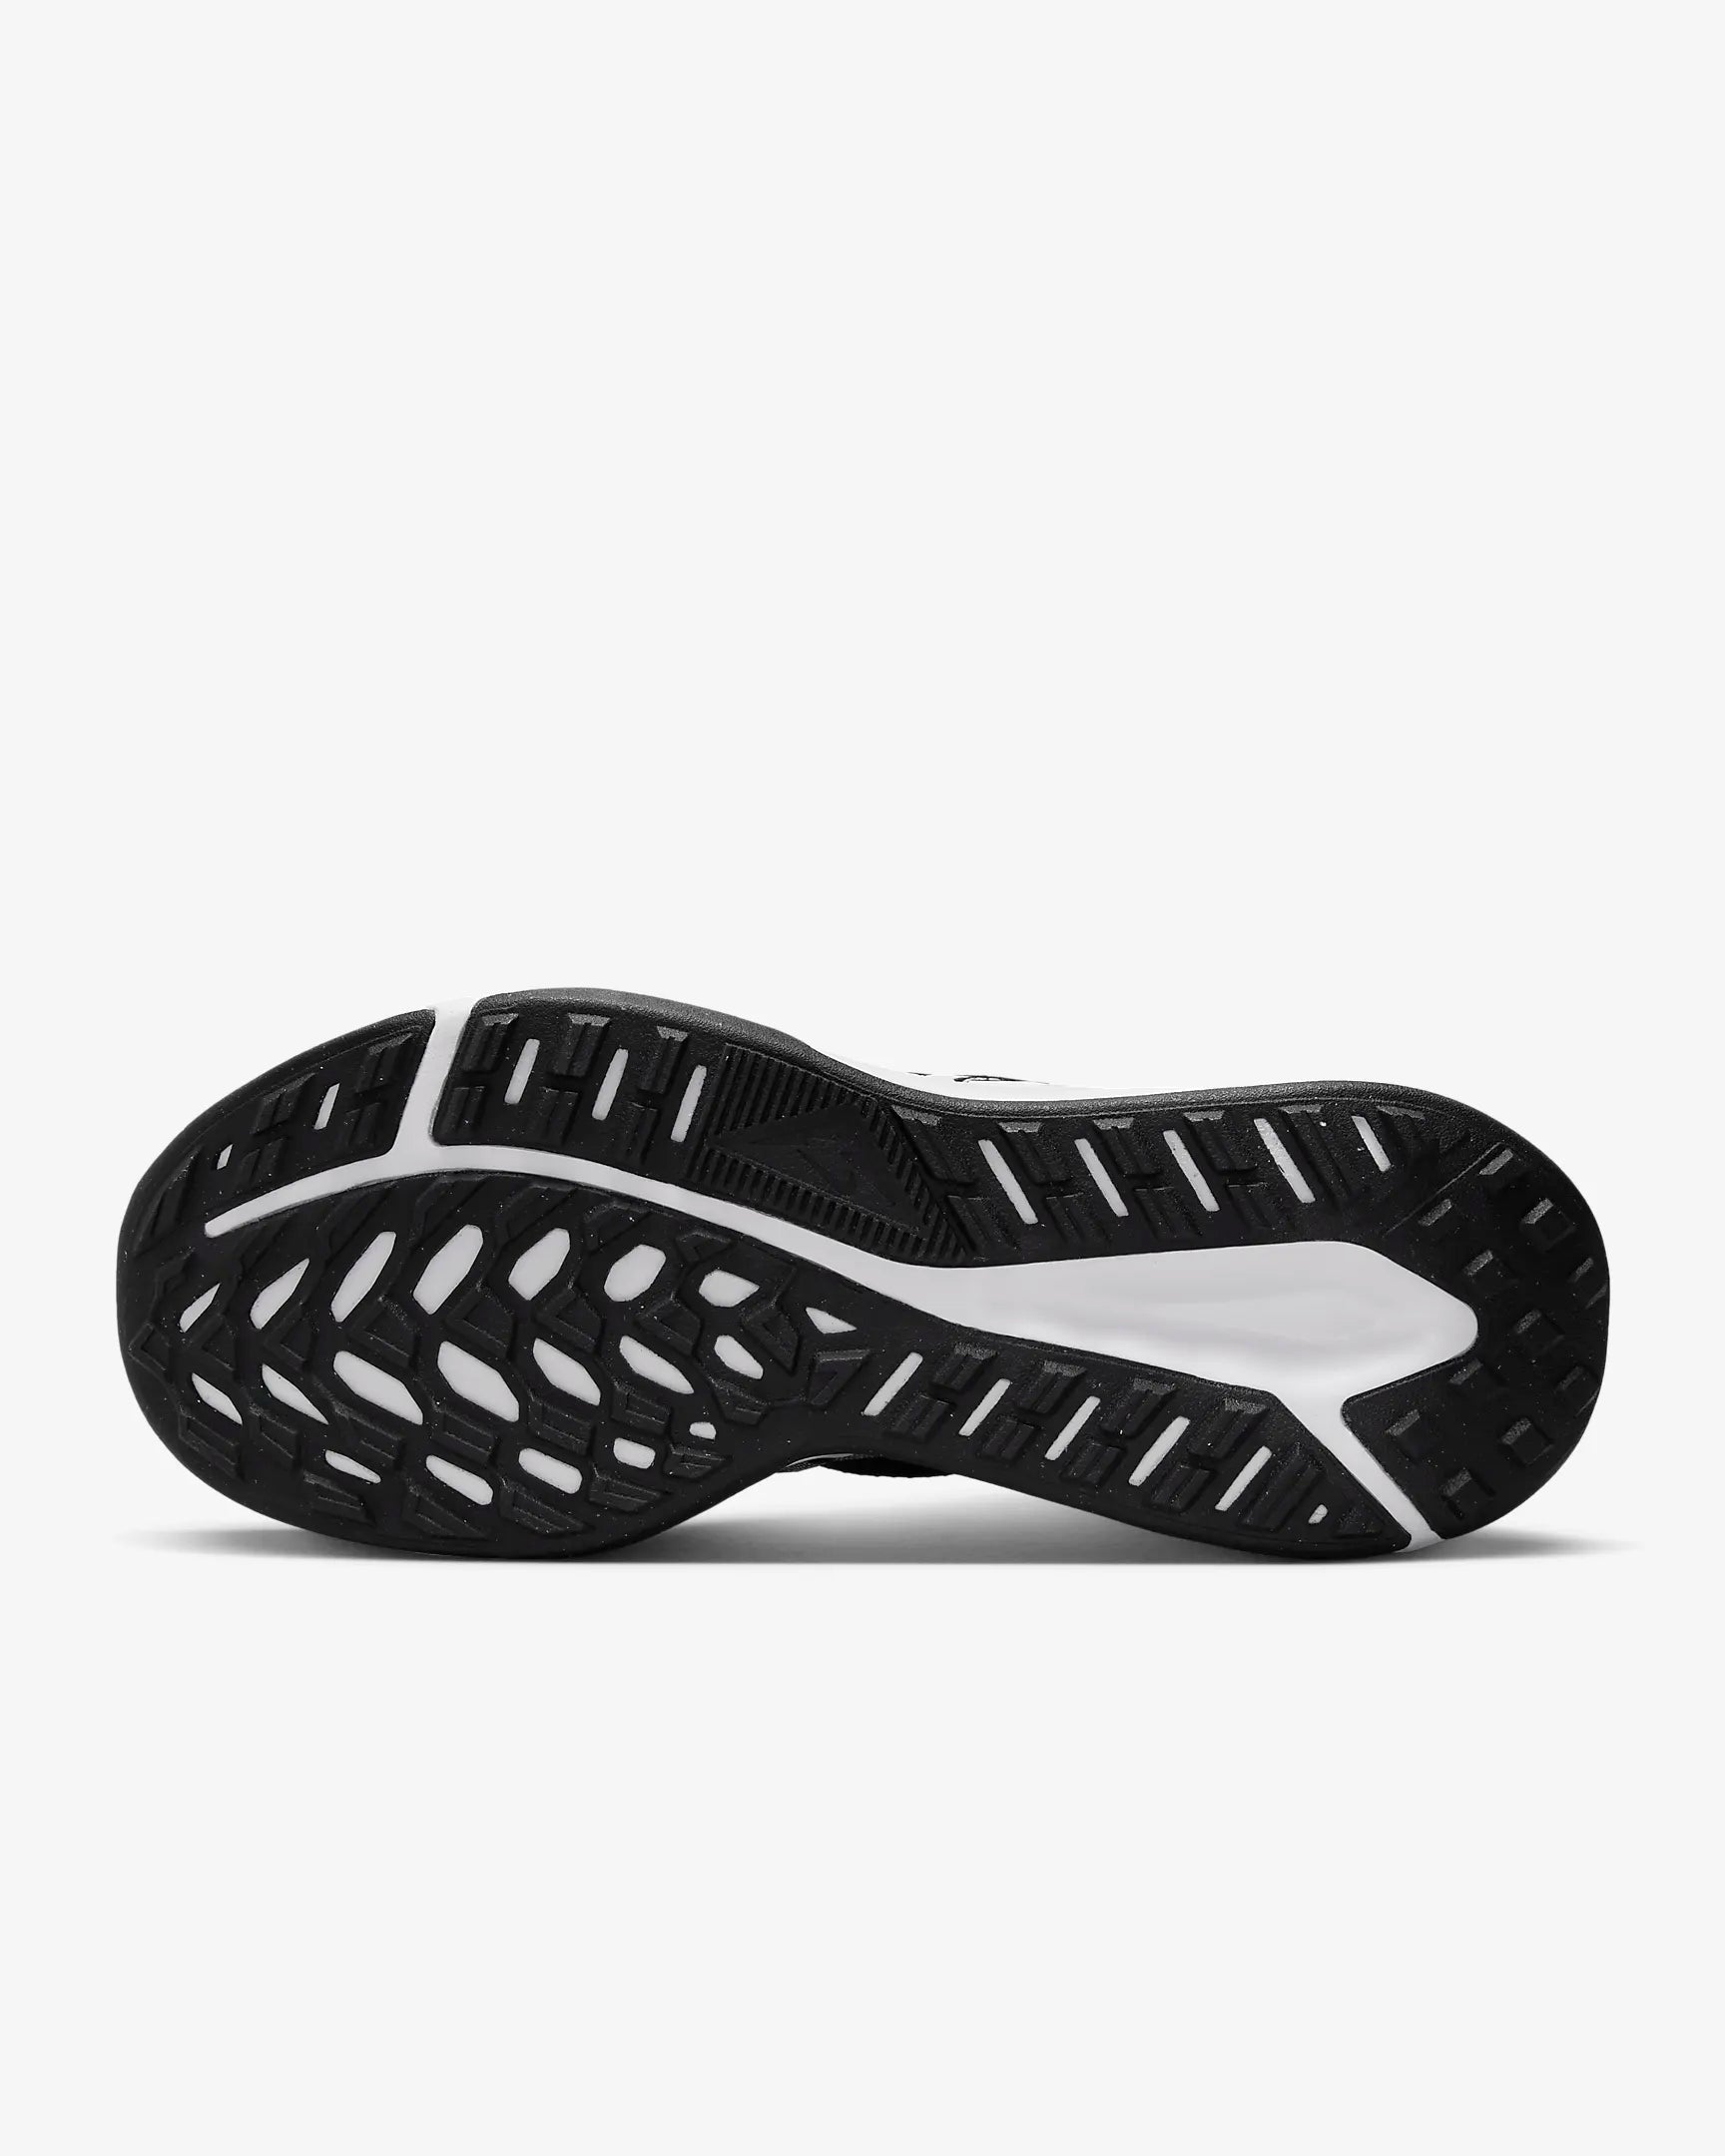 Nike Nike MEN'S Juniper Trail 2 BLACK/WHITE Trail-Running Shoes - INSPORT